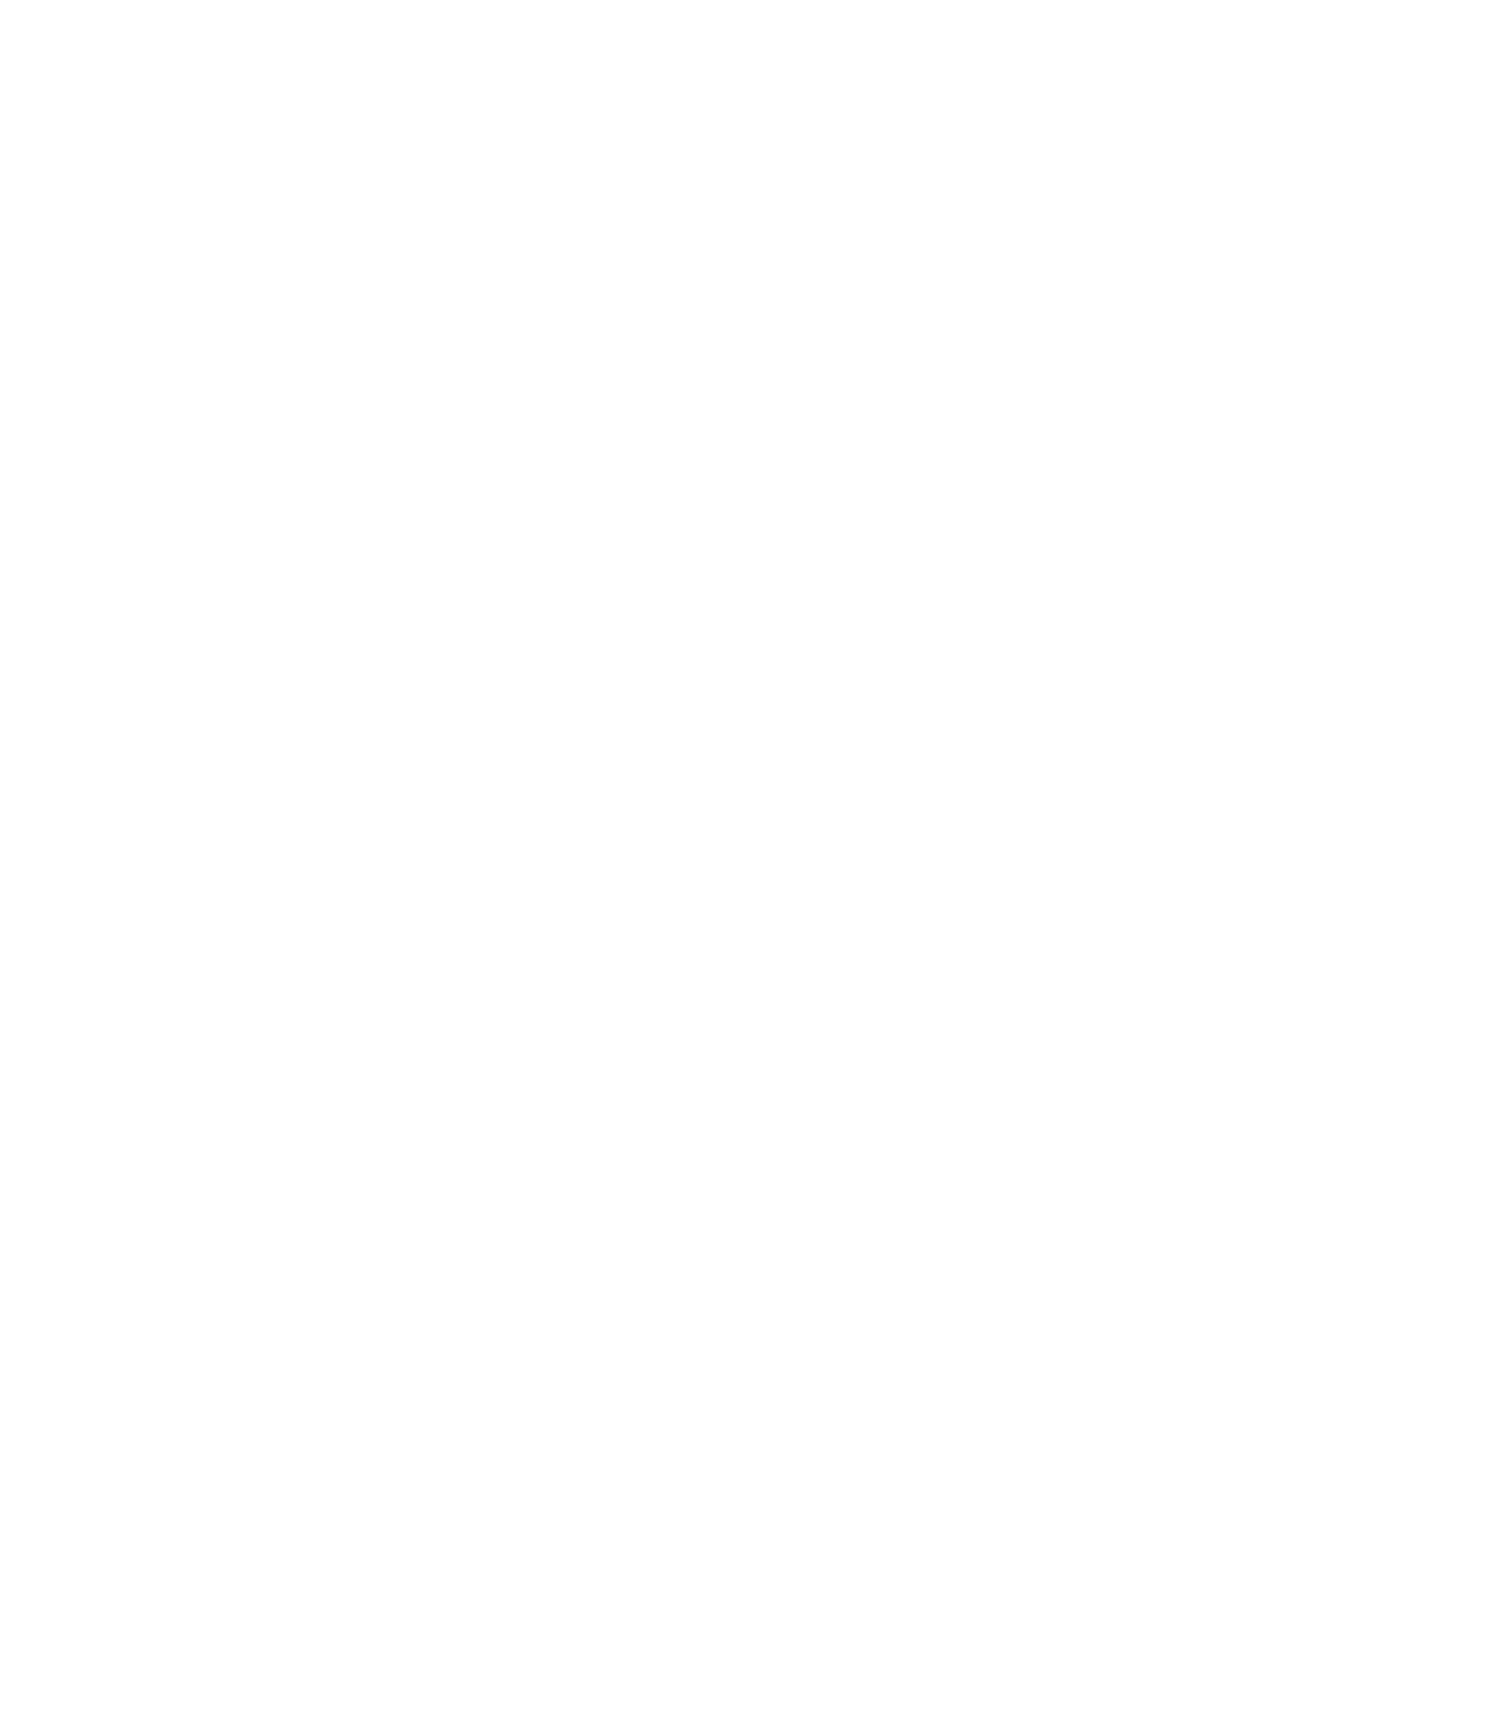 Gayle Karen Young